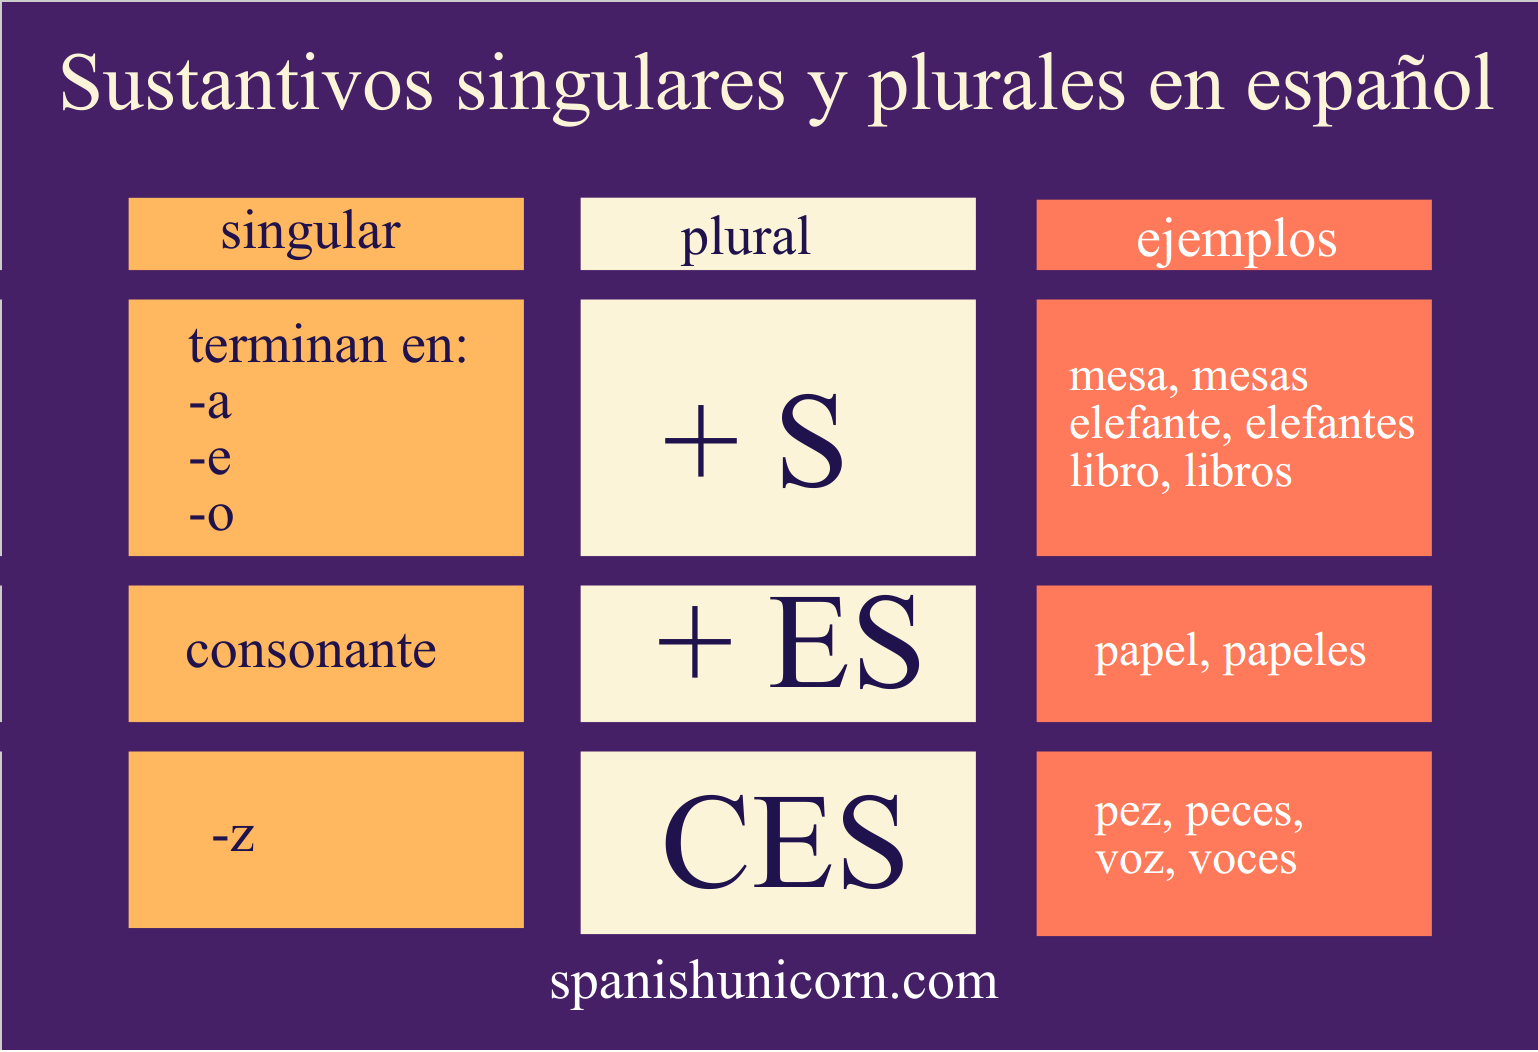 sustantivos-singulares-y-plurales-spanish-unicorn